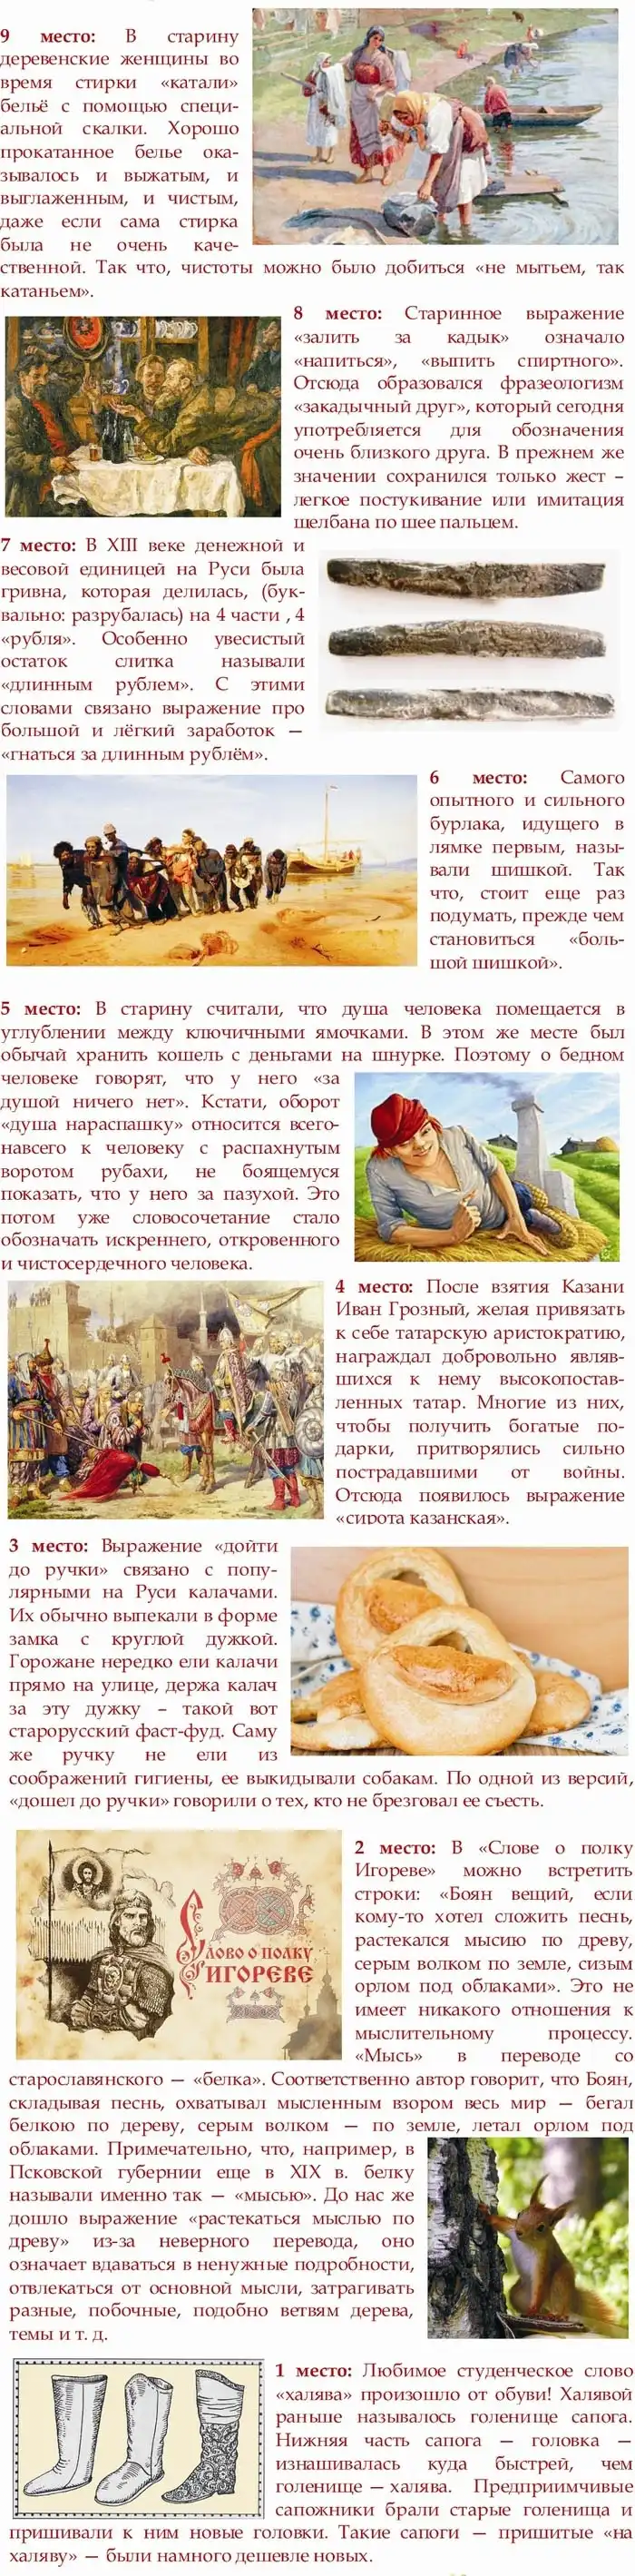 История известных русских фразеологизмов